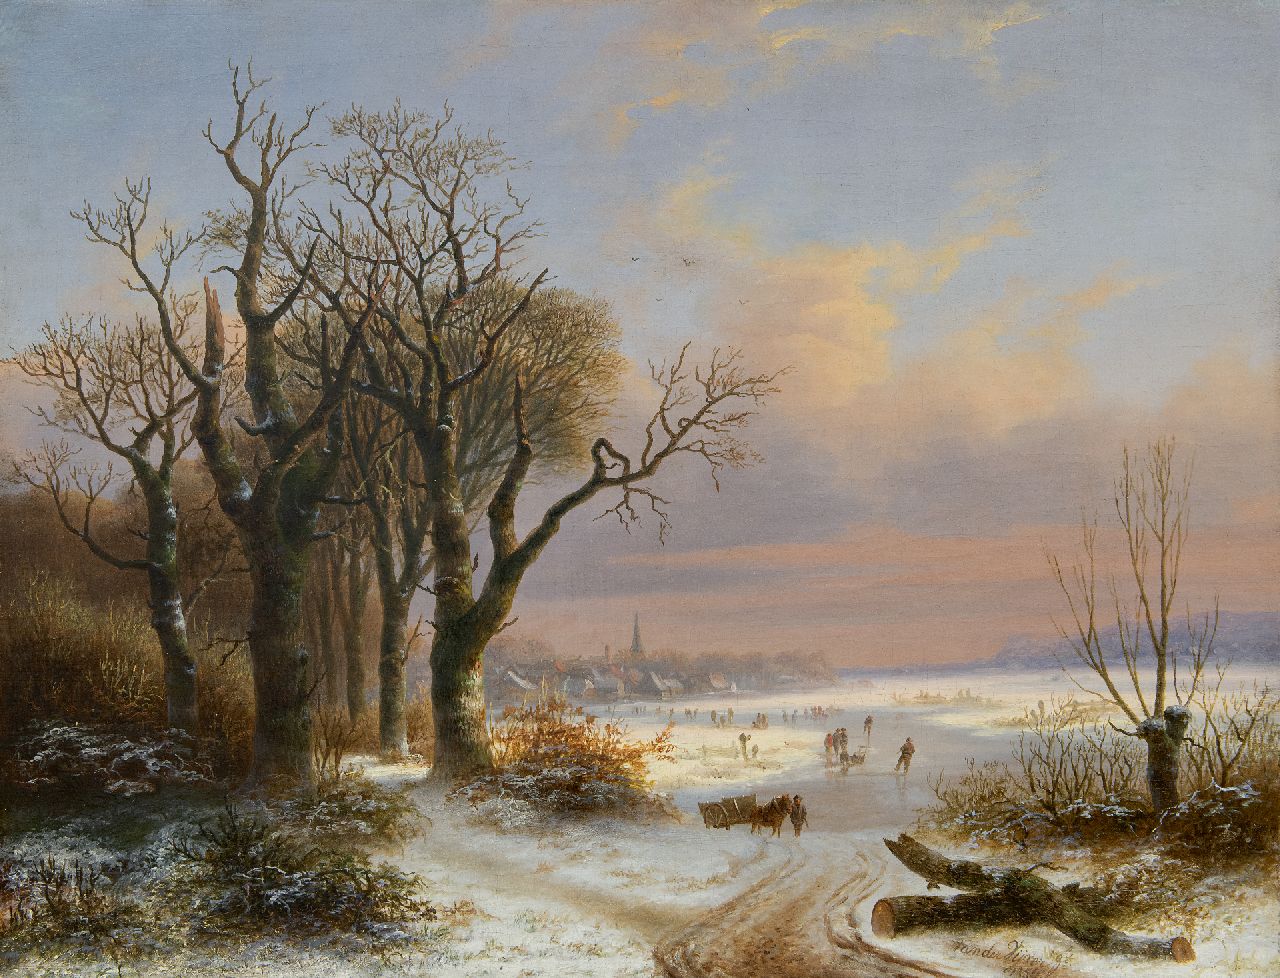 Vijver W.S.P. van der | Willem Simon Petrus van der Vijver, Winterlandschaft mit Eisläufern vor einer kleinen Stadt, Öl auf Leinwand 48,8 x 62,5 cm, Unterzeichnet u.r. und datiert 1854